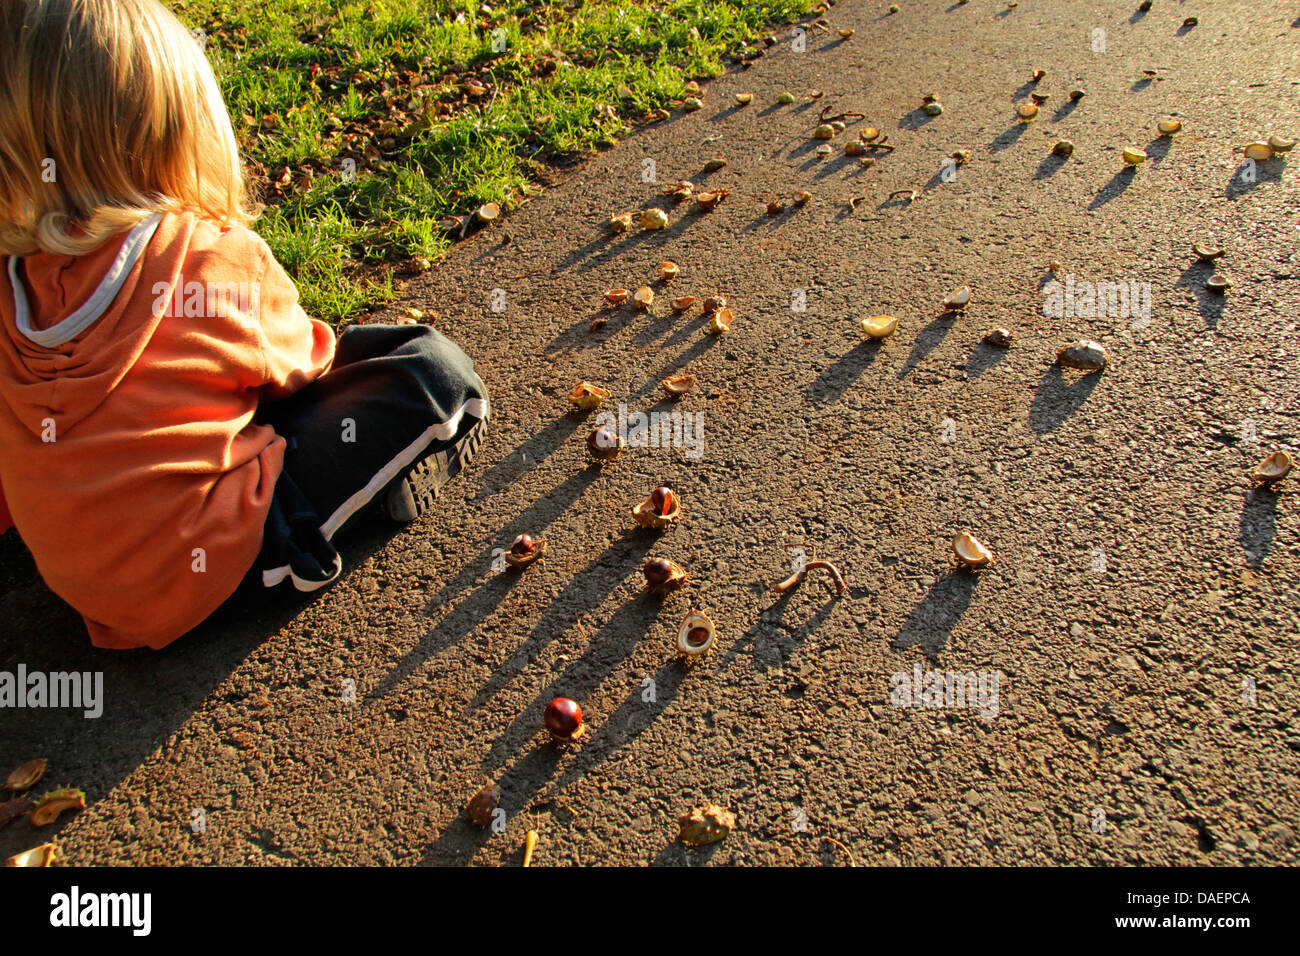 Petit enfant assis sur une façon de jouer avec les châtaignes, Allemagne Banque D'Images